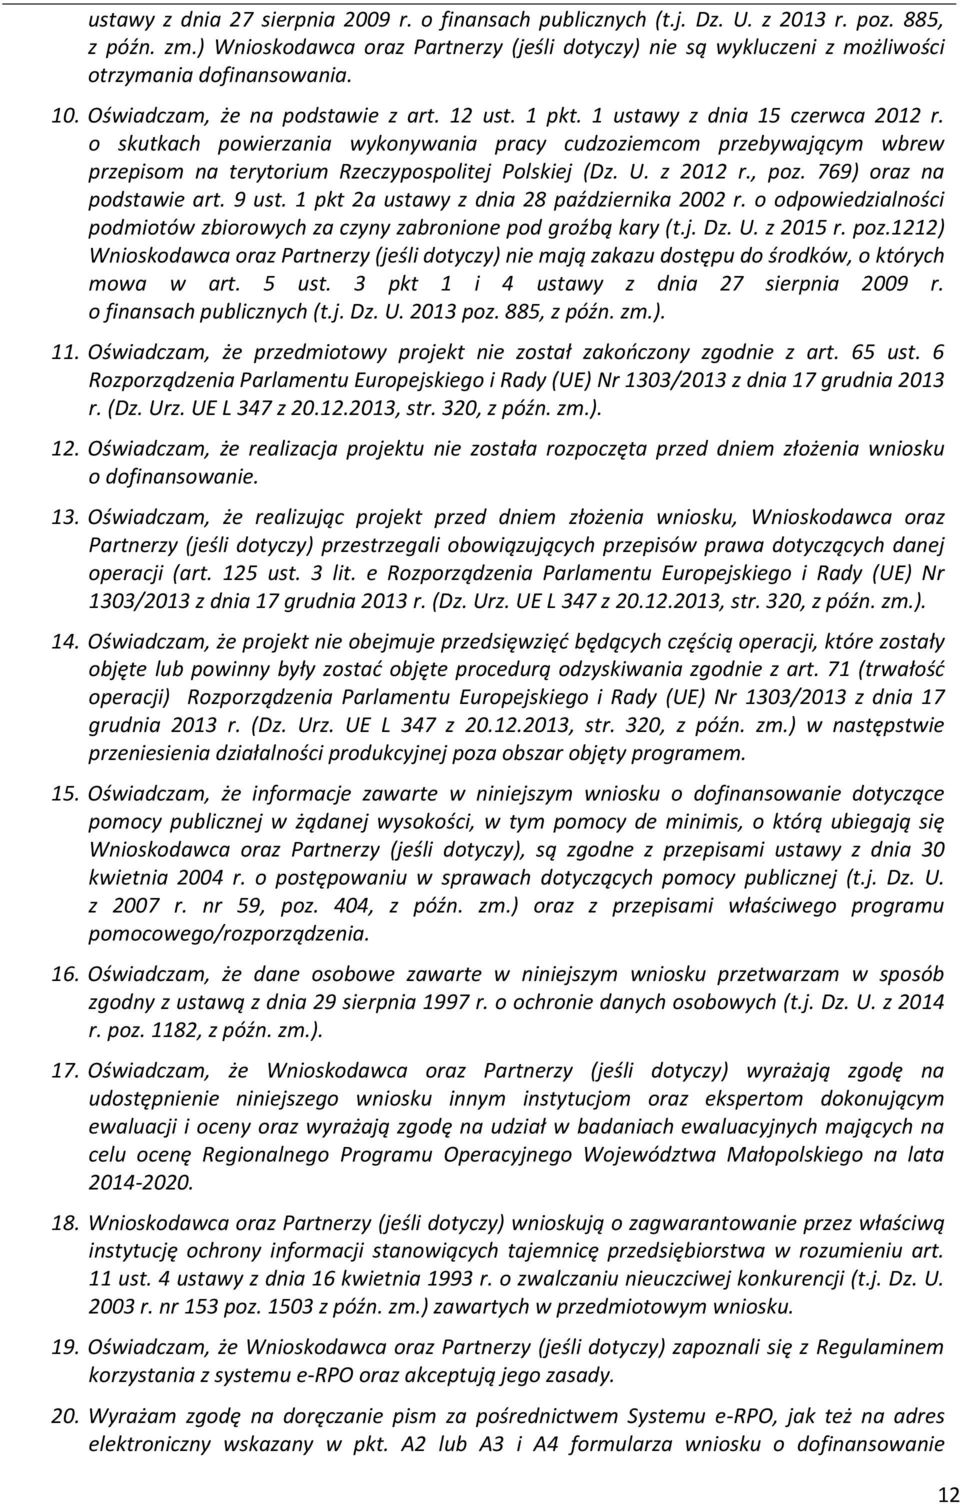 o skutkach powierzania wykonywania pracy cudzoziemcom przebywającym wbrew przepisom na terytorium Rzeczypospolitej Polskiej (Dz. U. z 202 r., poz. 769) oraz na podstawie art. 9 ust.